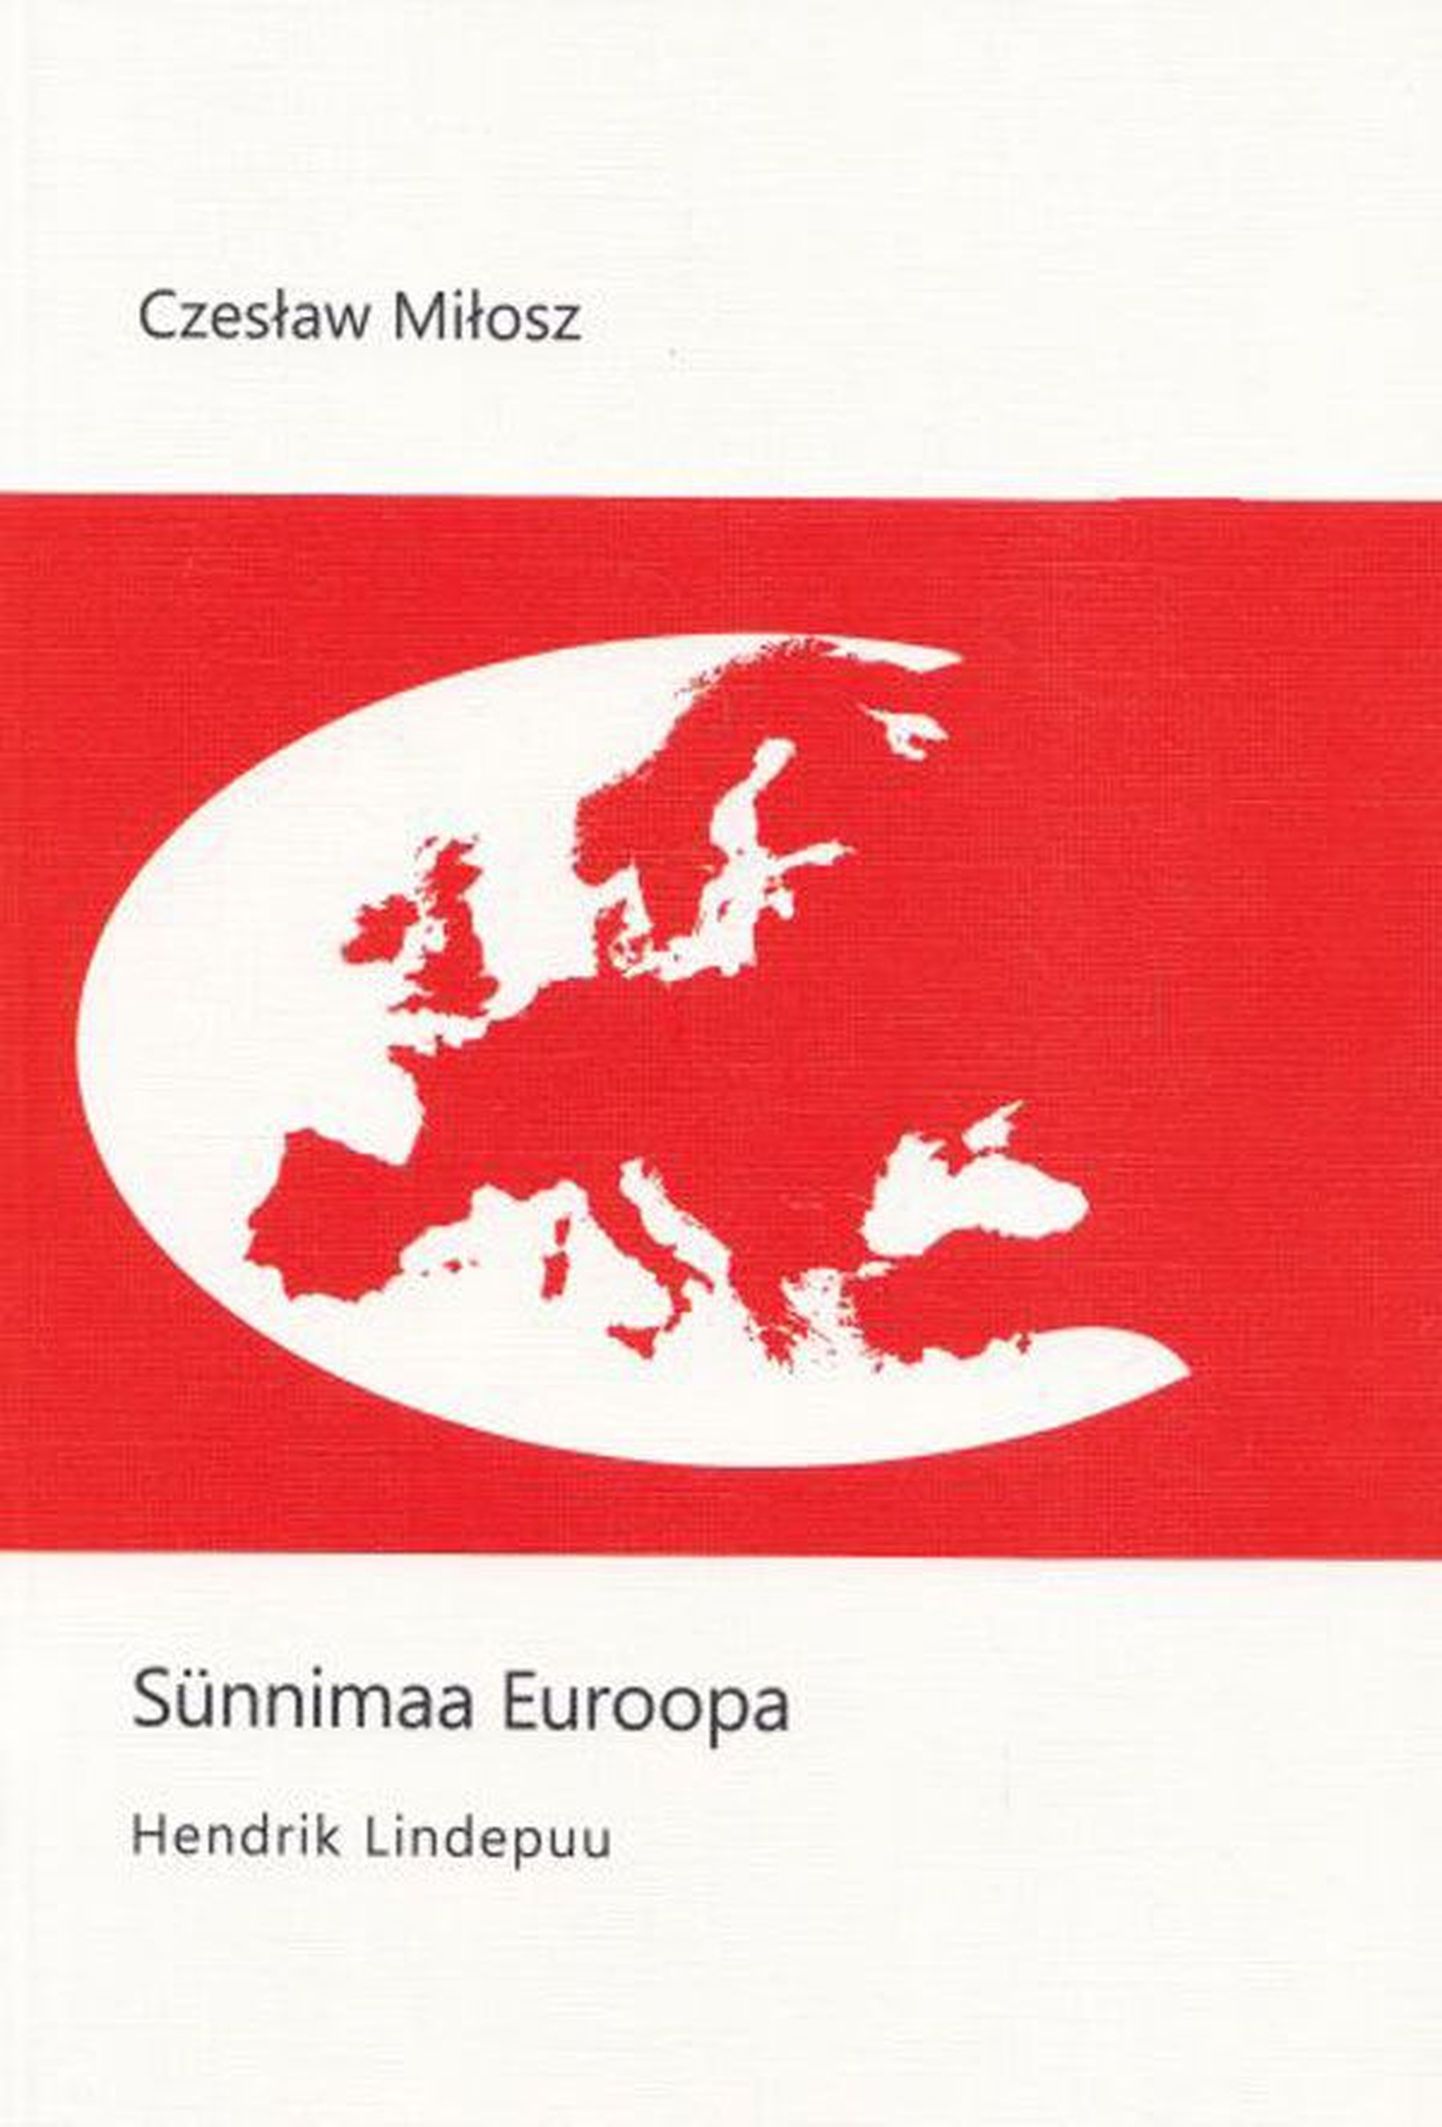 Uus raamat
Czesław Miłosz
 «Sünnimaa Euroopa»
Tõlkinud Hendrik Lindepuu
Hendrik Lindepuu Kirjastus
Tartu 2012, 272 lk